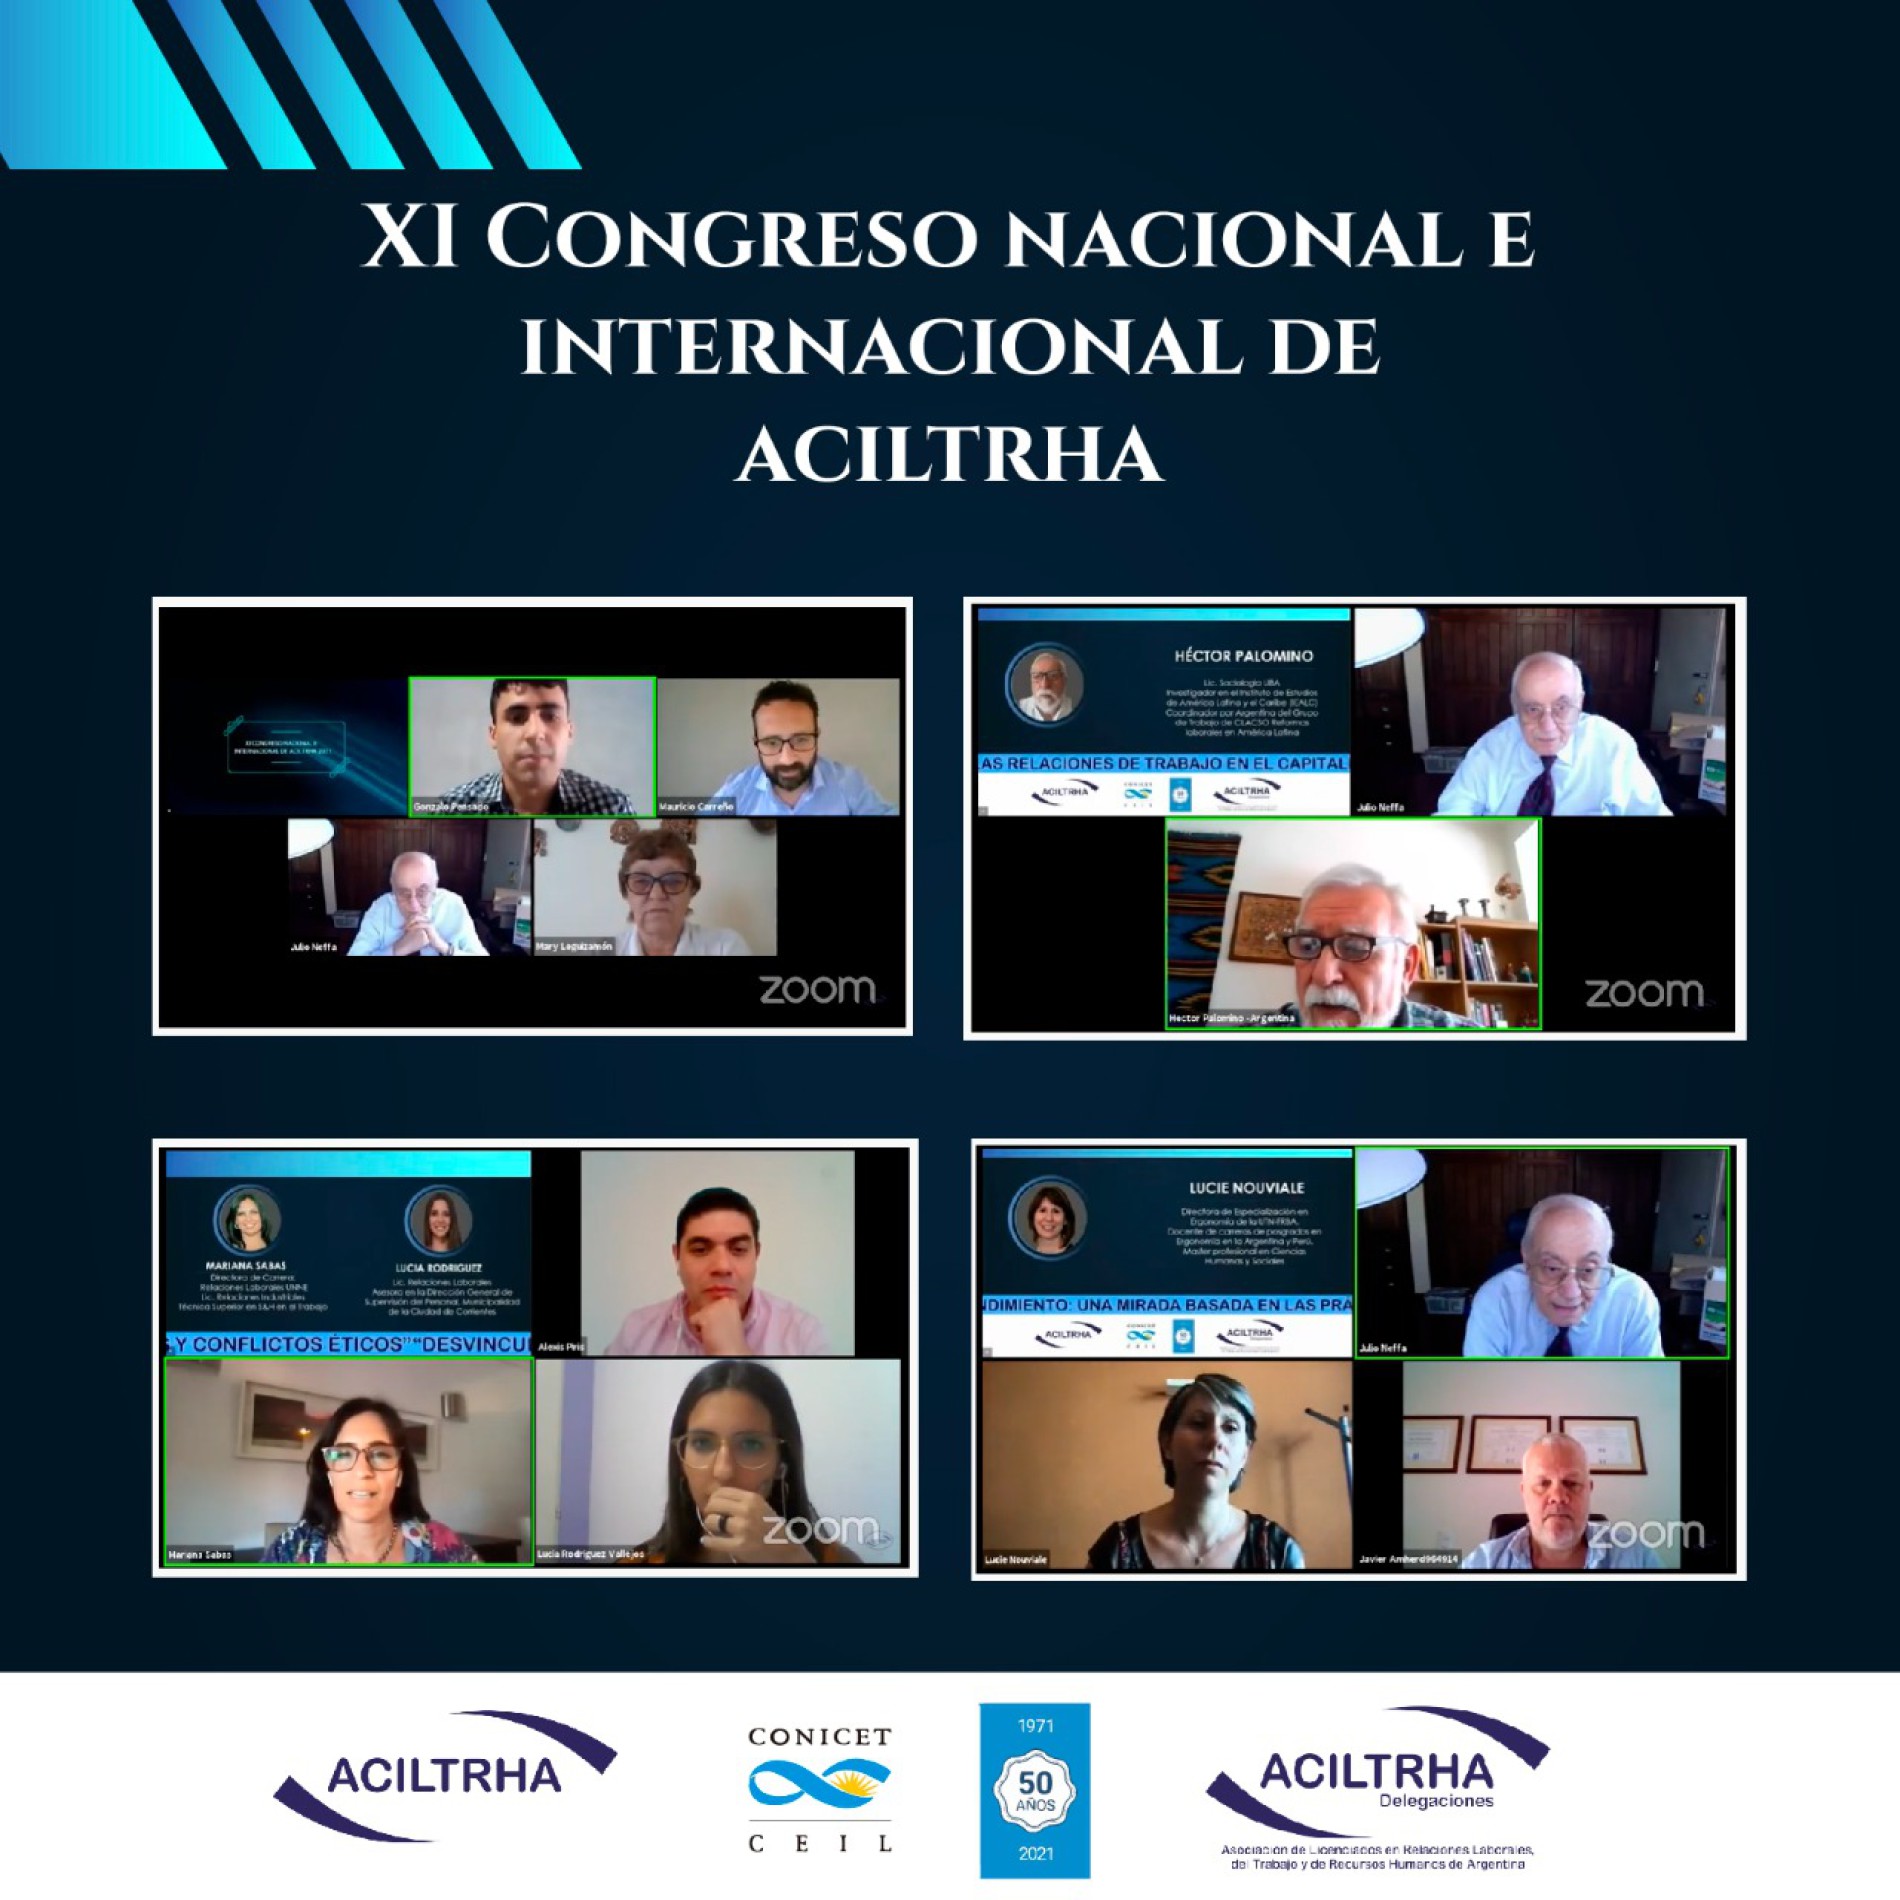 XI CONGRESO NACIONAL E INTERNACIONAL DE ACILTRHA 2021 | «Mercado de trabajo: competencias profesionales, aportes al ejercicio de la profesión, idoneidad y ética en la función»